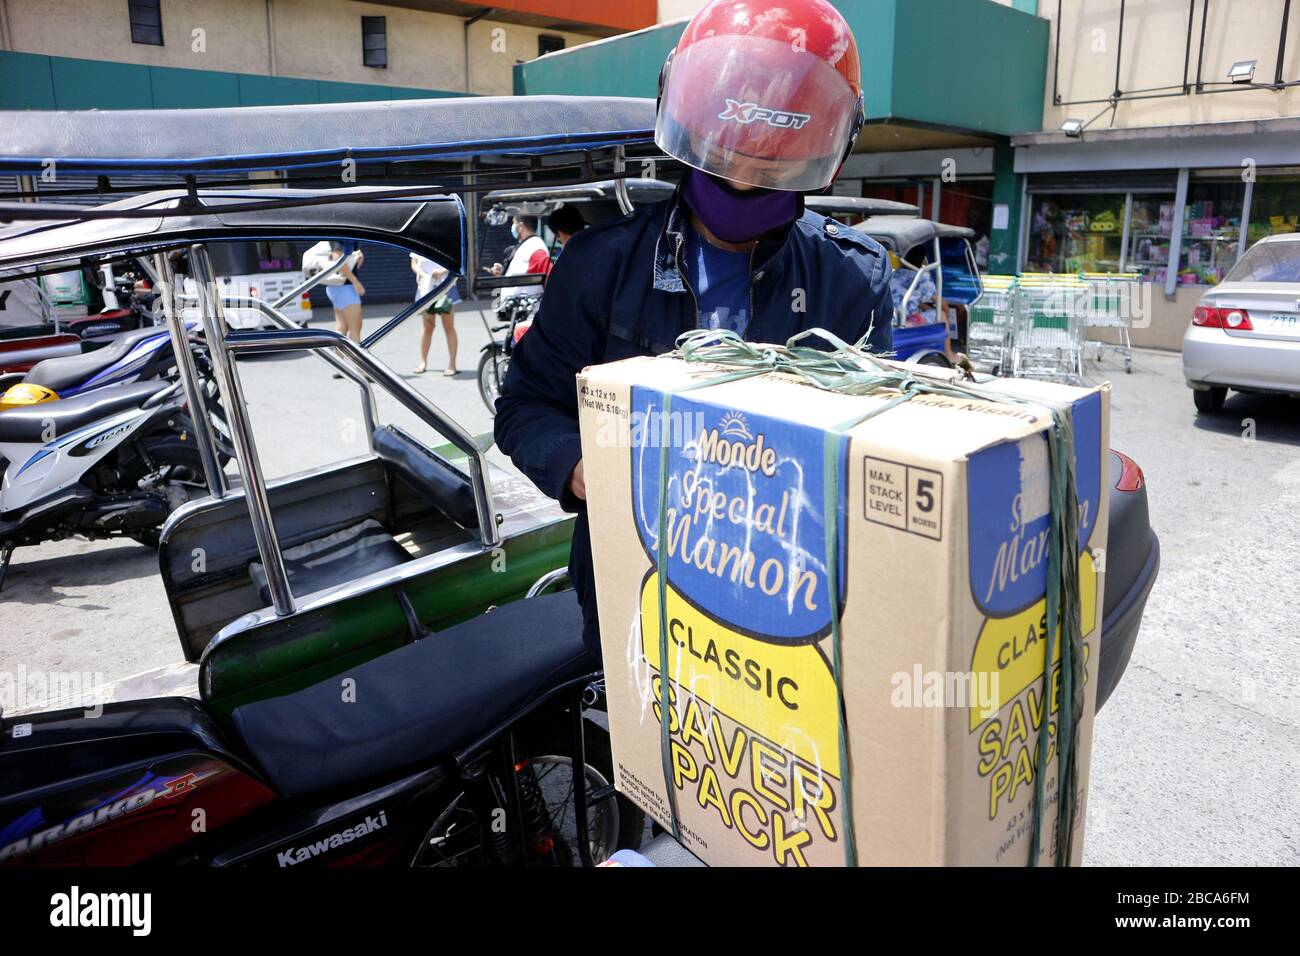 Antipolo City, Philippines - 2 avril 2020: L'homme charge une grande boîte remplie d'articles d'épicerie qu'il vient d'acheter sur sa moto pendant le verrouillage ou le trajet Banque D'Images